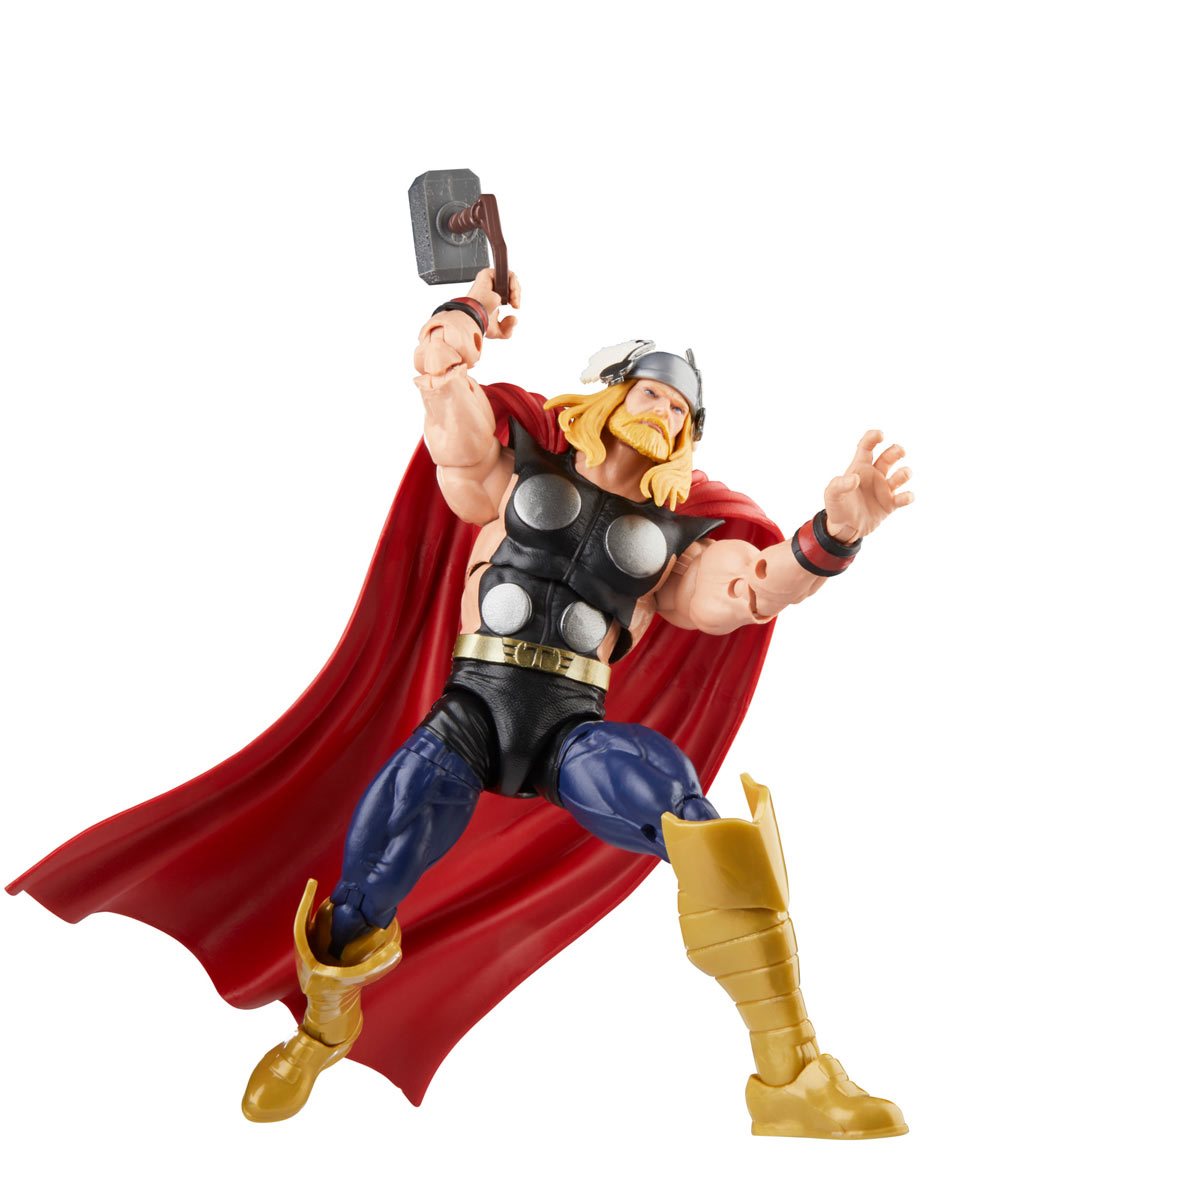 Avengers 60th Anniversary Marvel Legends Thor vs. Marvel's Destroyer Hasbro